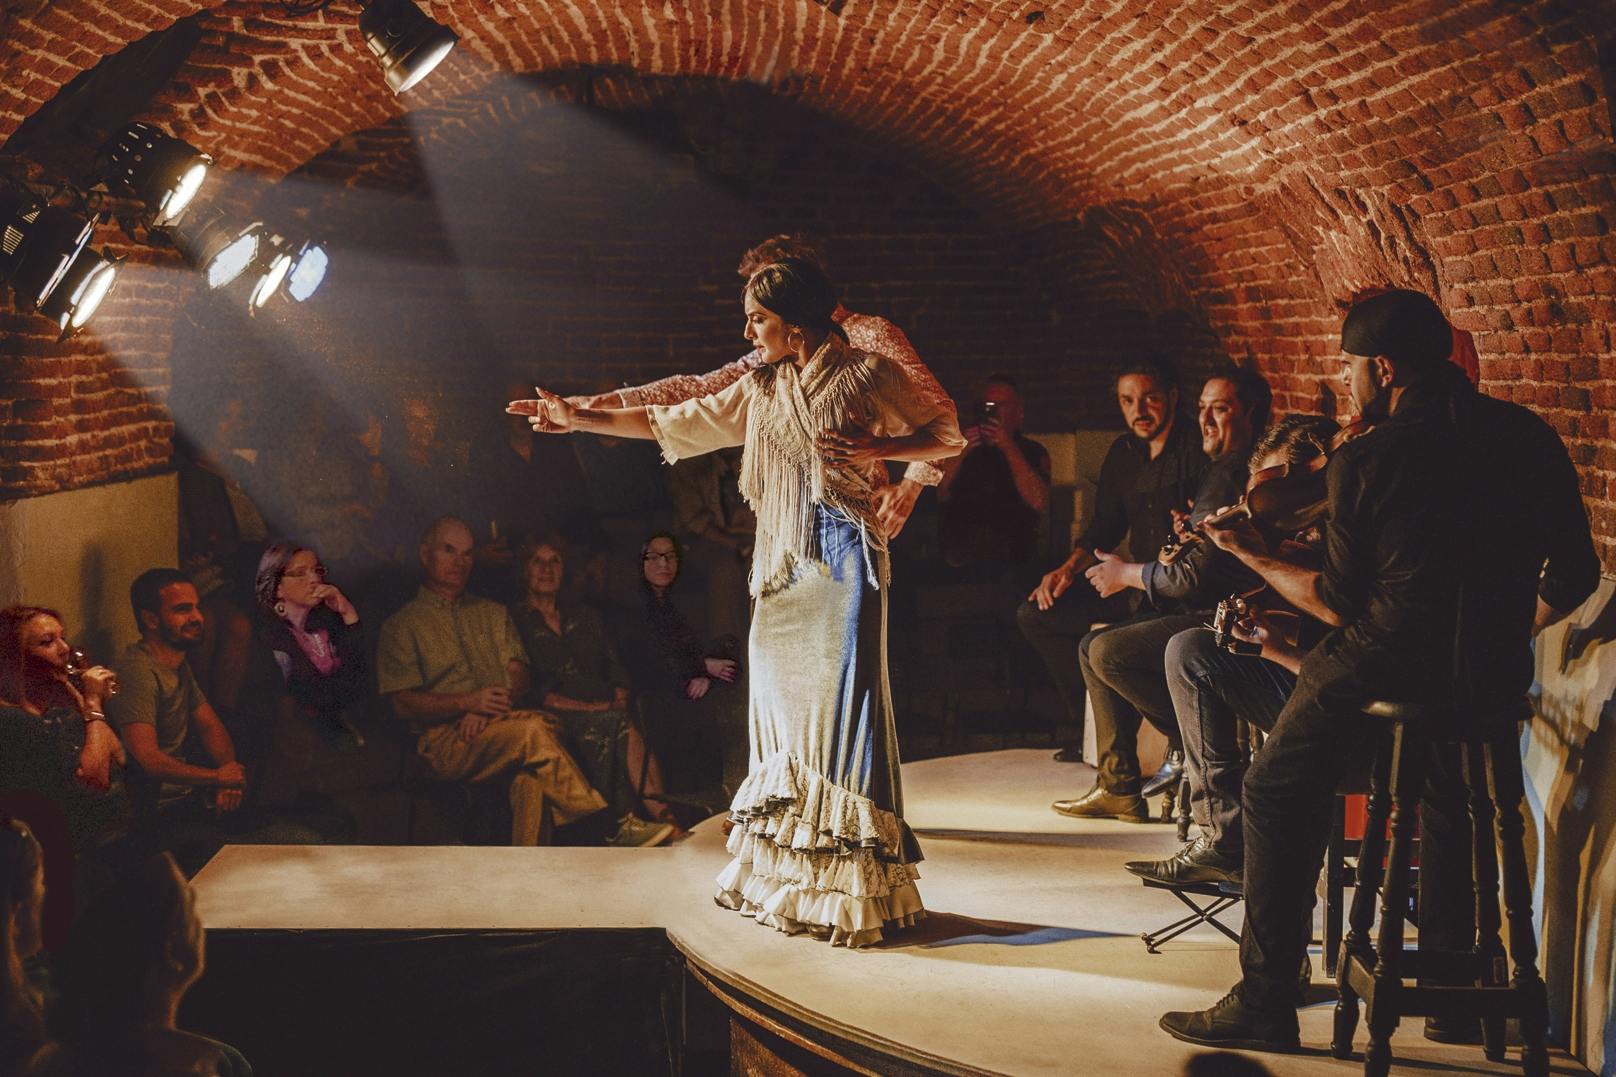 Tradycyjny pokaz flamenco w ceglanej jaskini w Madrycie